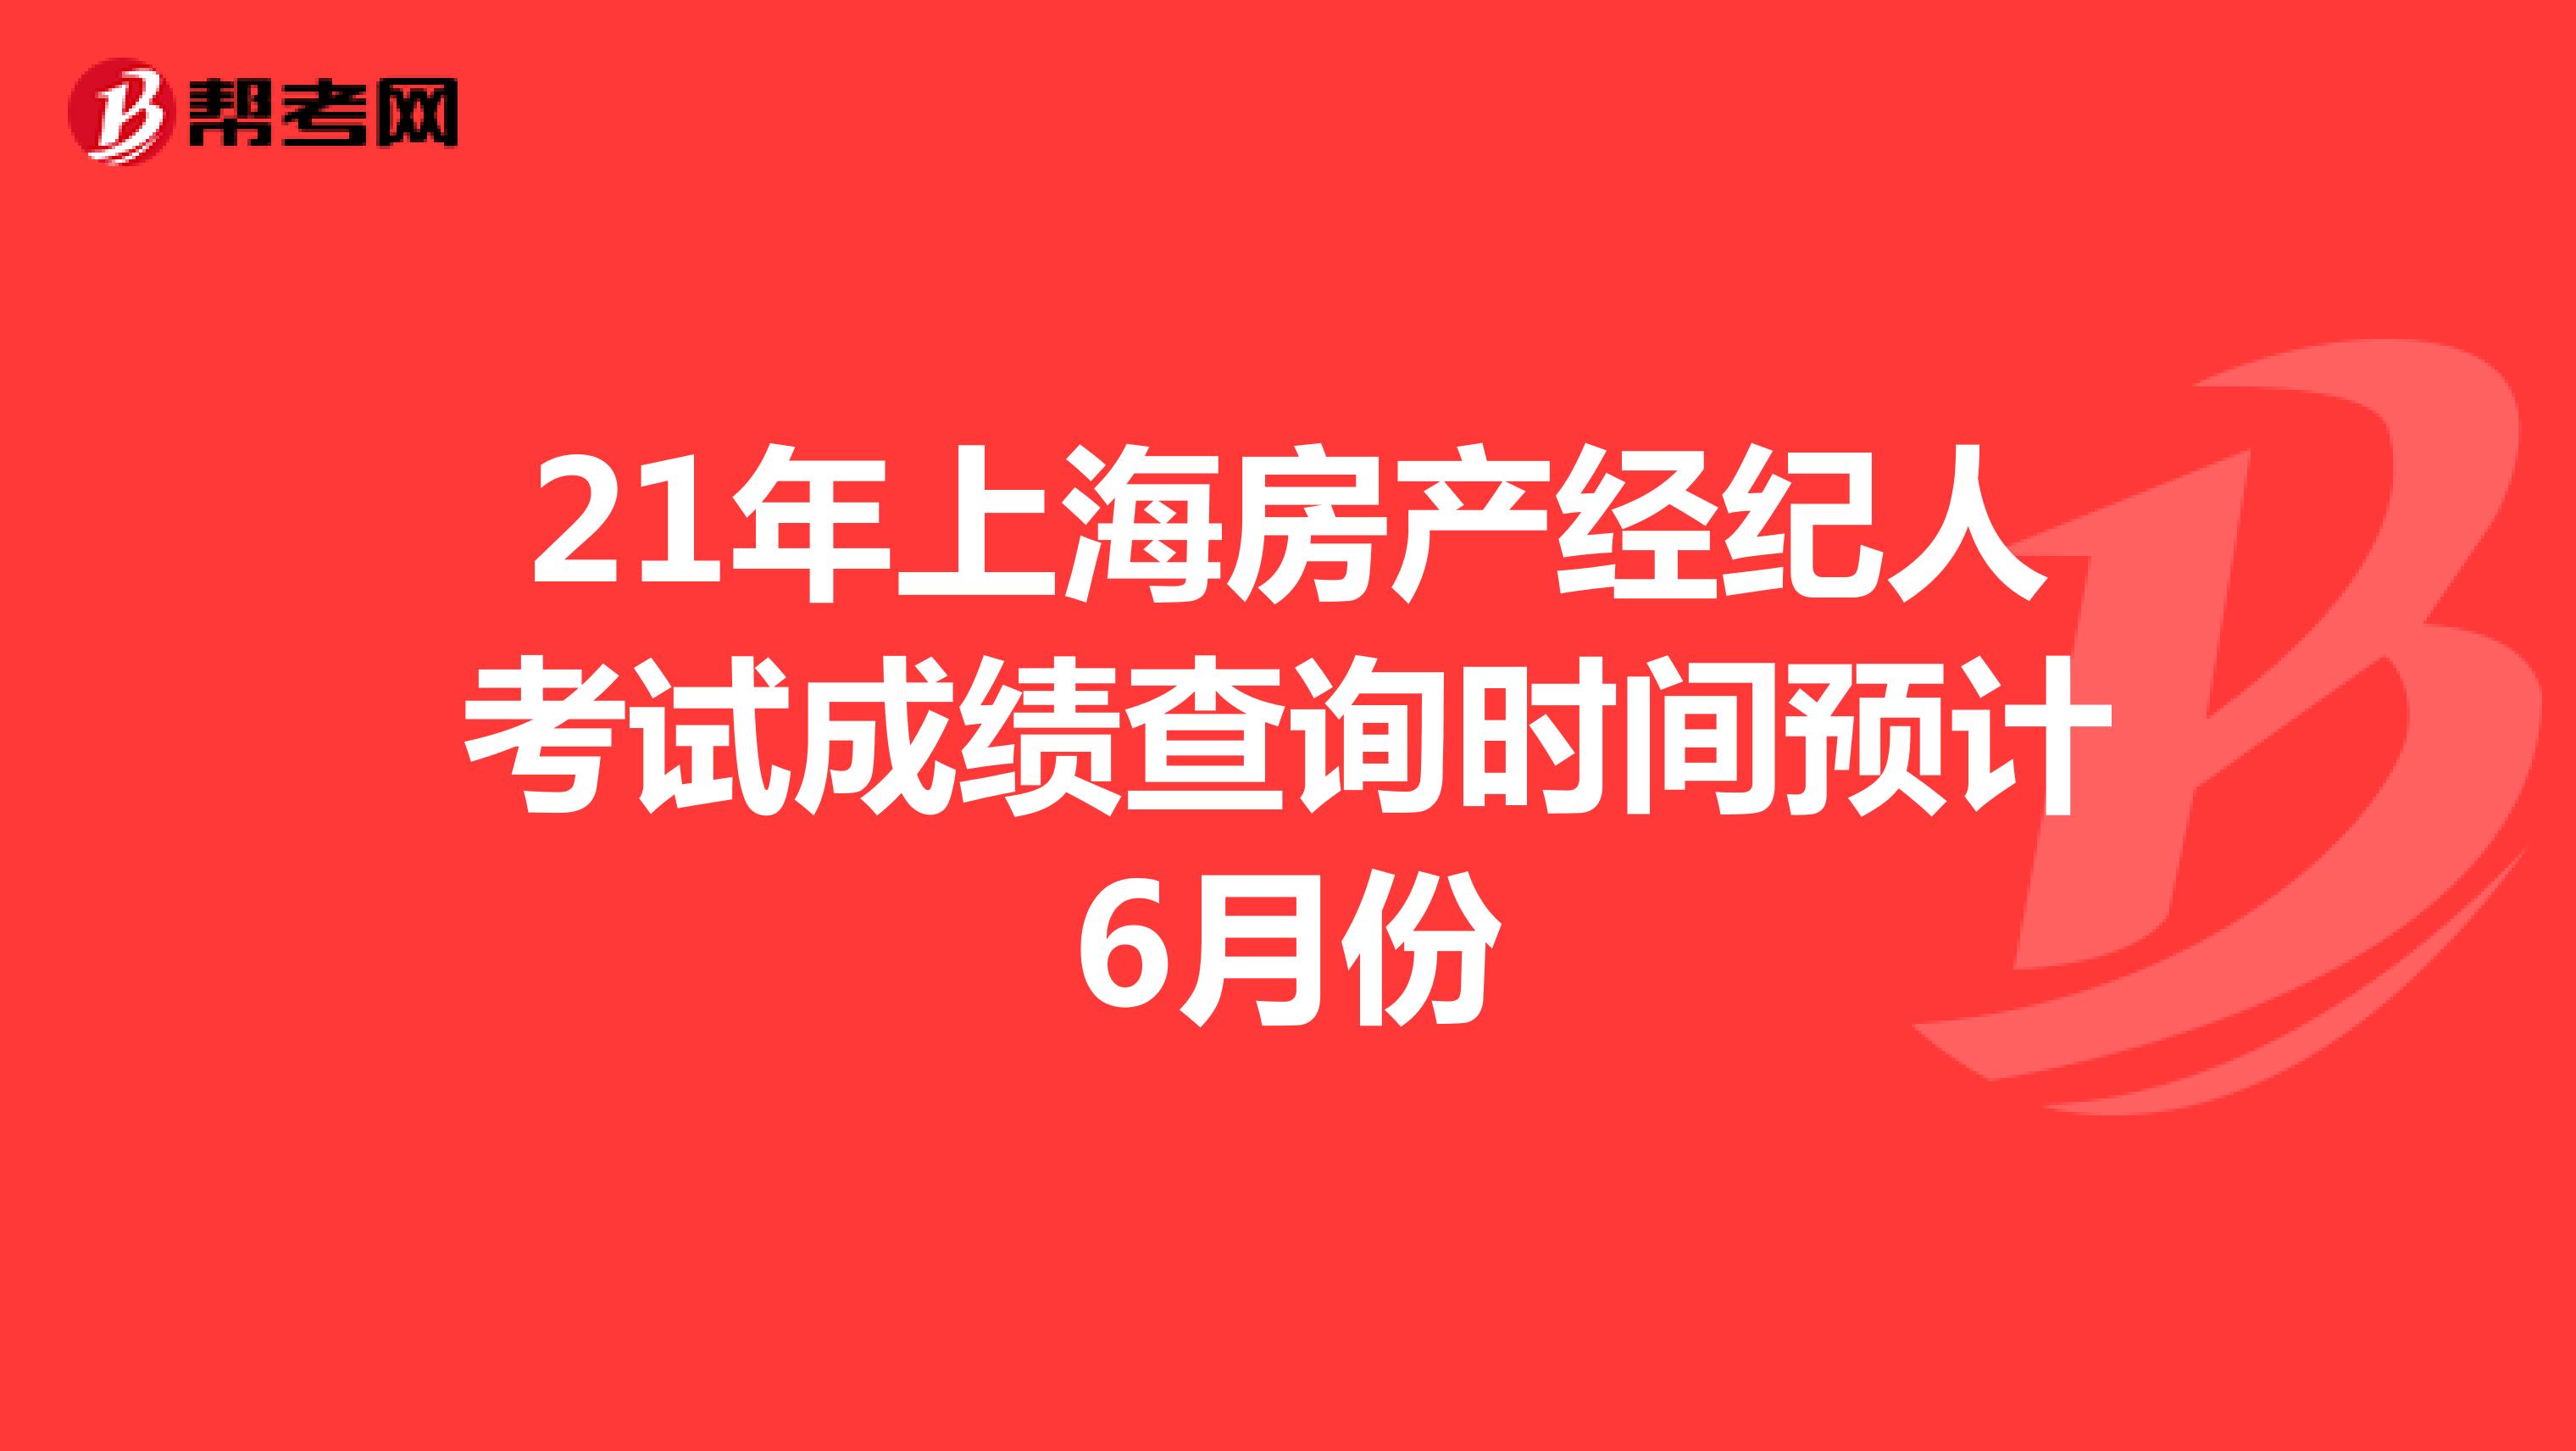 21年上海房产经纪人考试成绩查询时间预计6月份